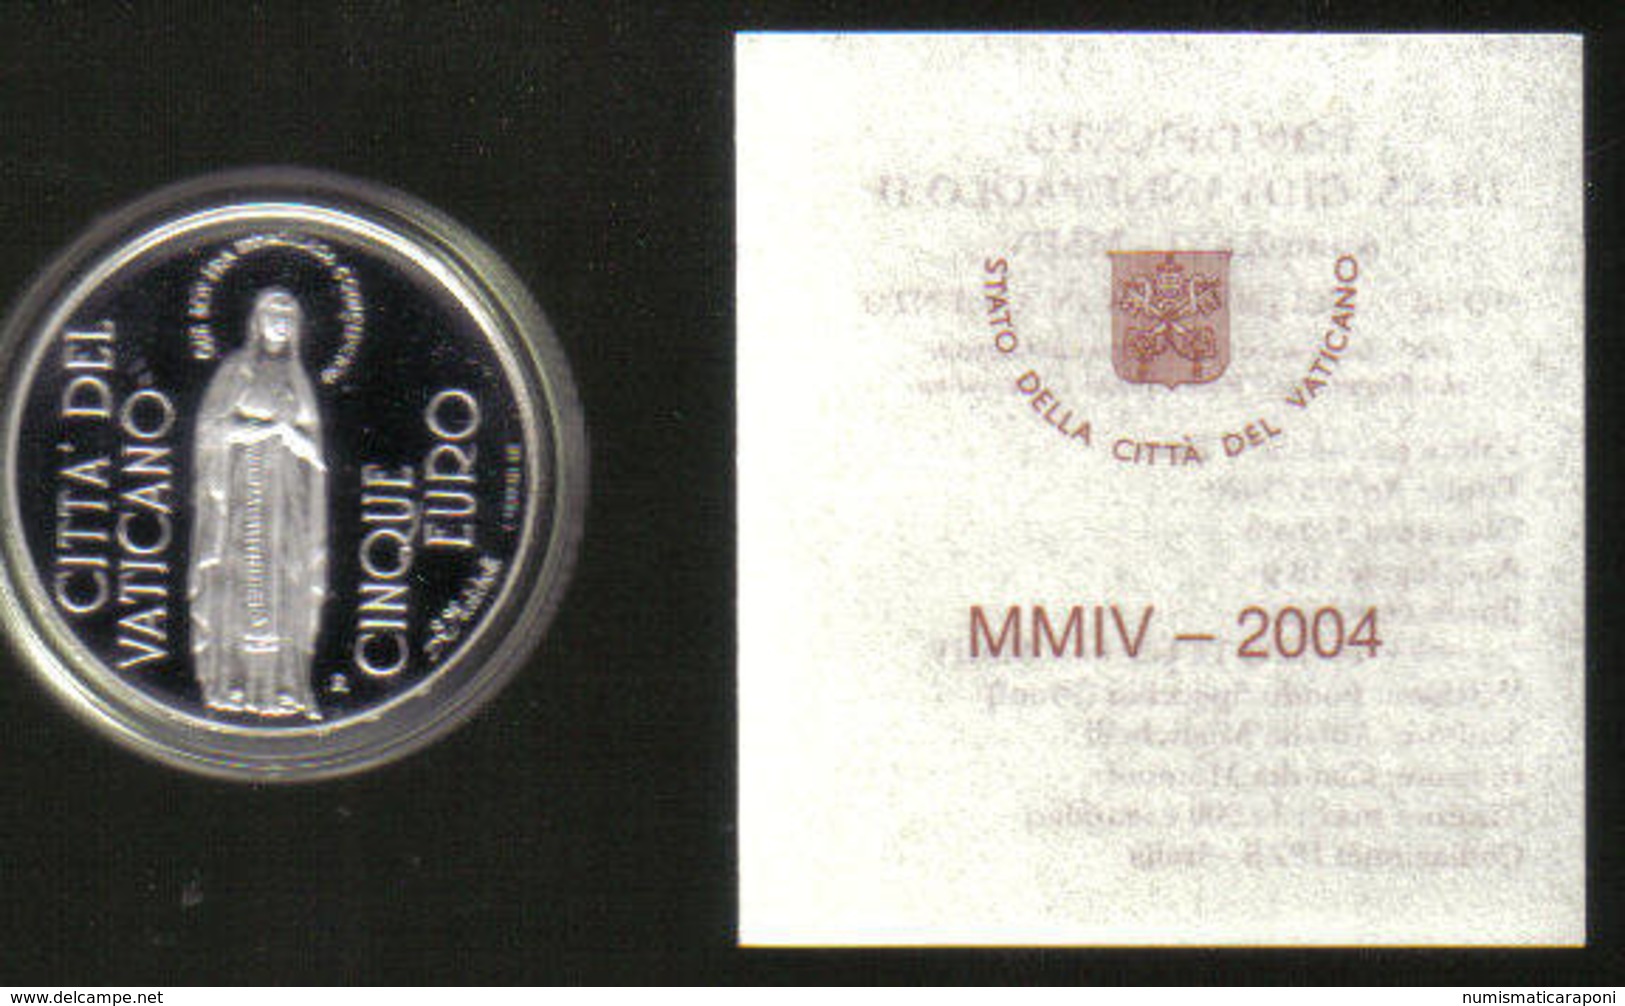 CITTÀ DEL VATICANO 5 € 2004 Immacolata Concezione Proof - Vatican